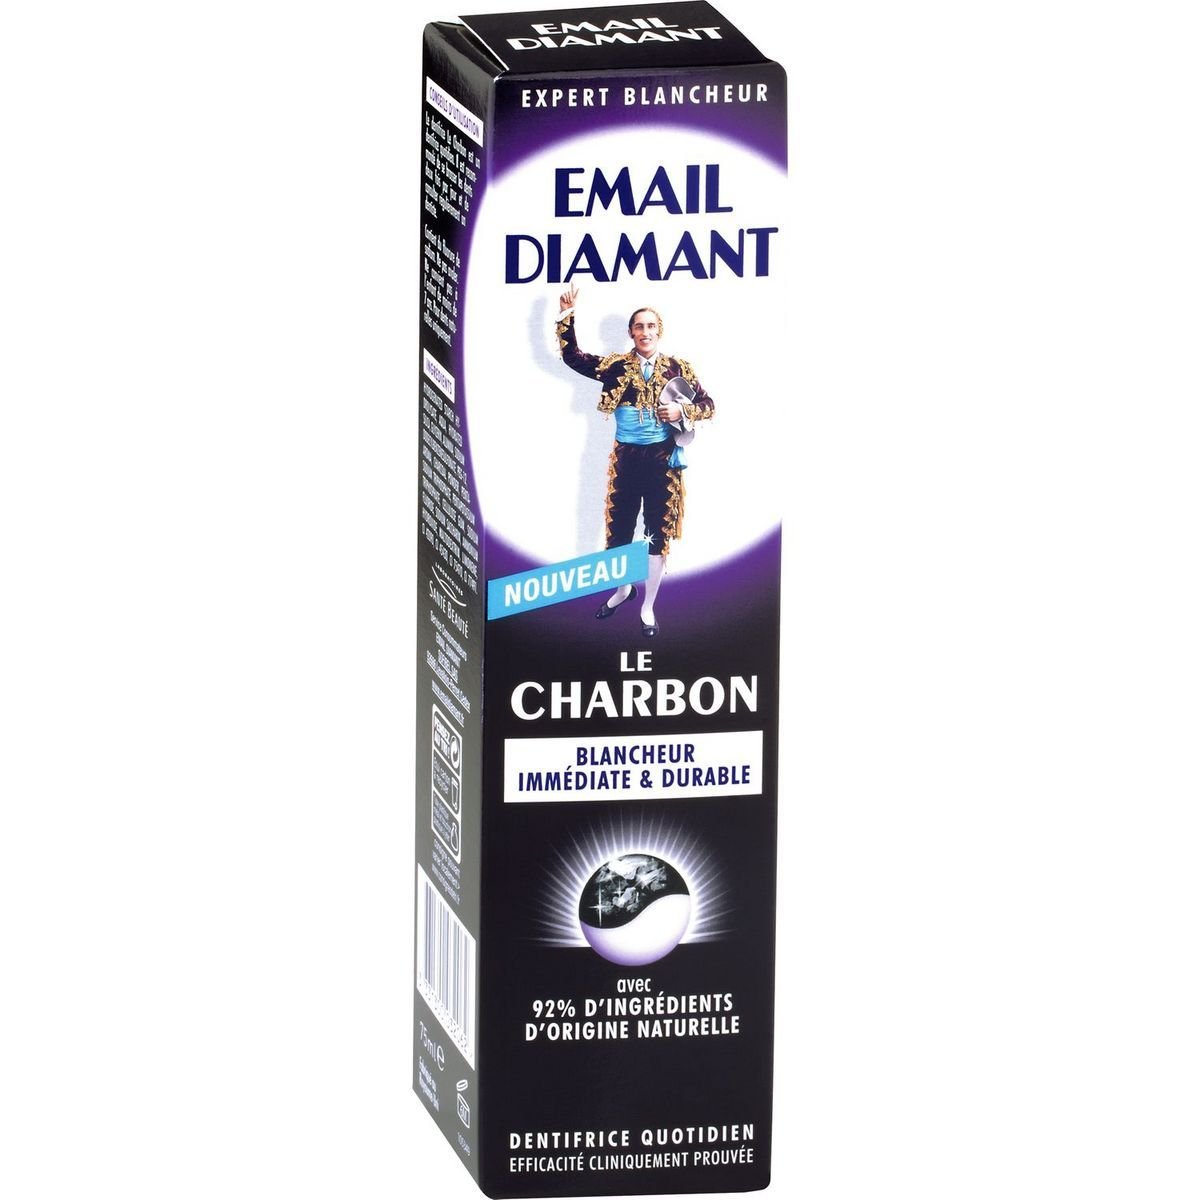 Sante Beaute EMAIL DIAMANT Charbon 75ml - purpurowa pasta wybielająca do zębów z aktywnym węglem